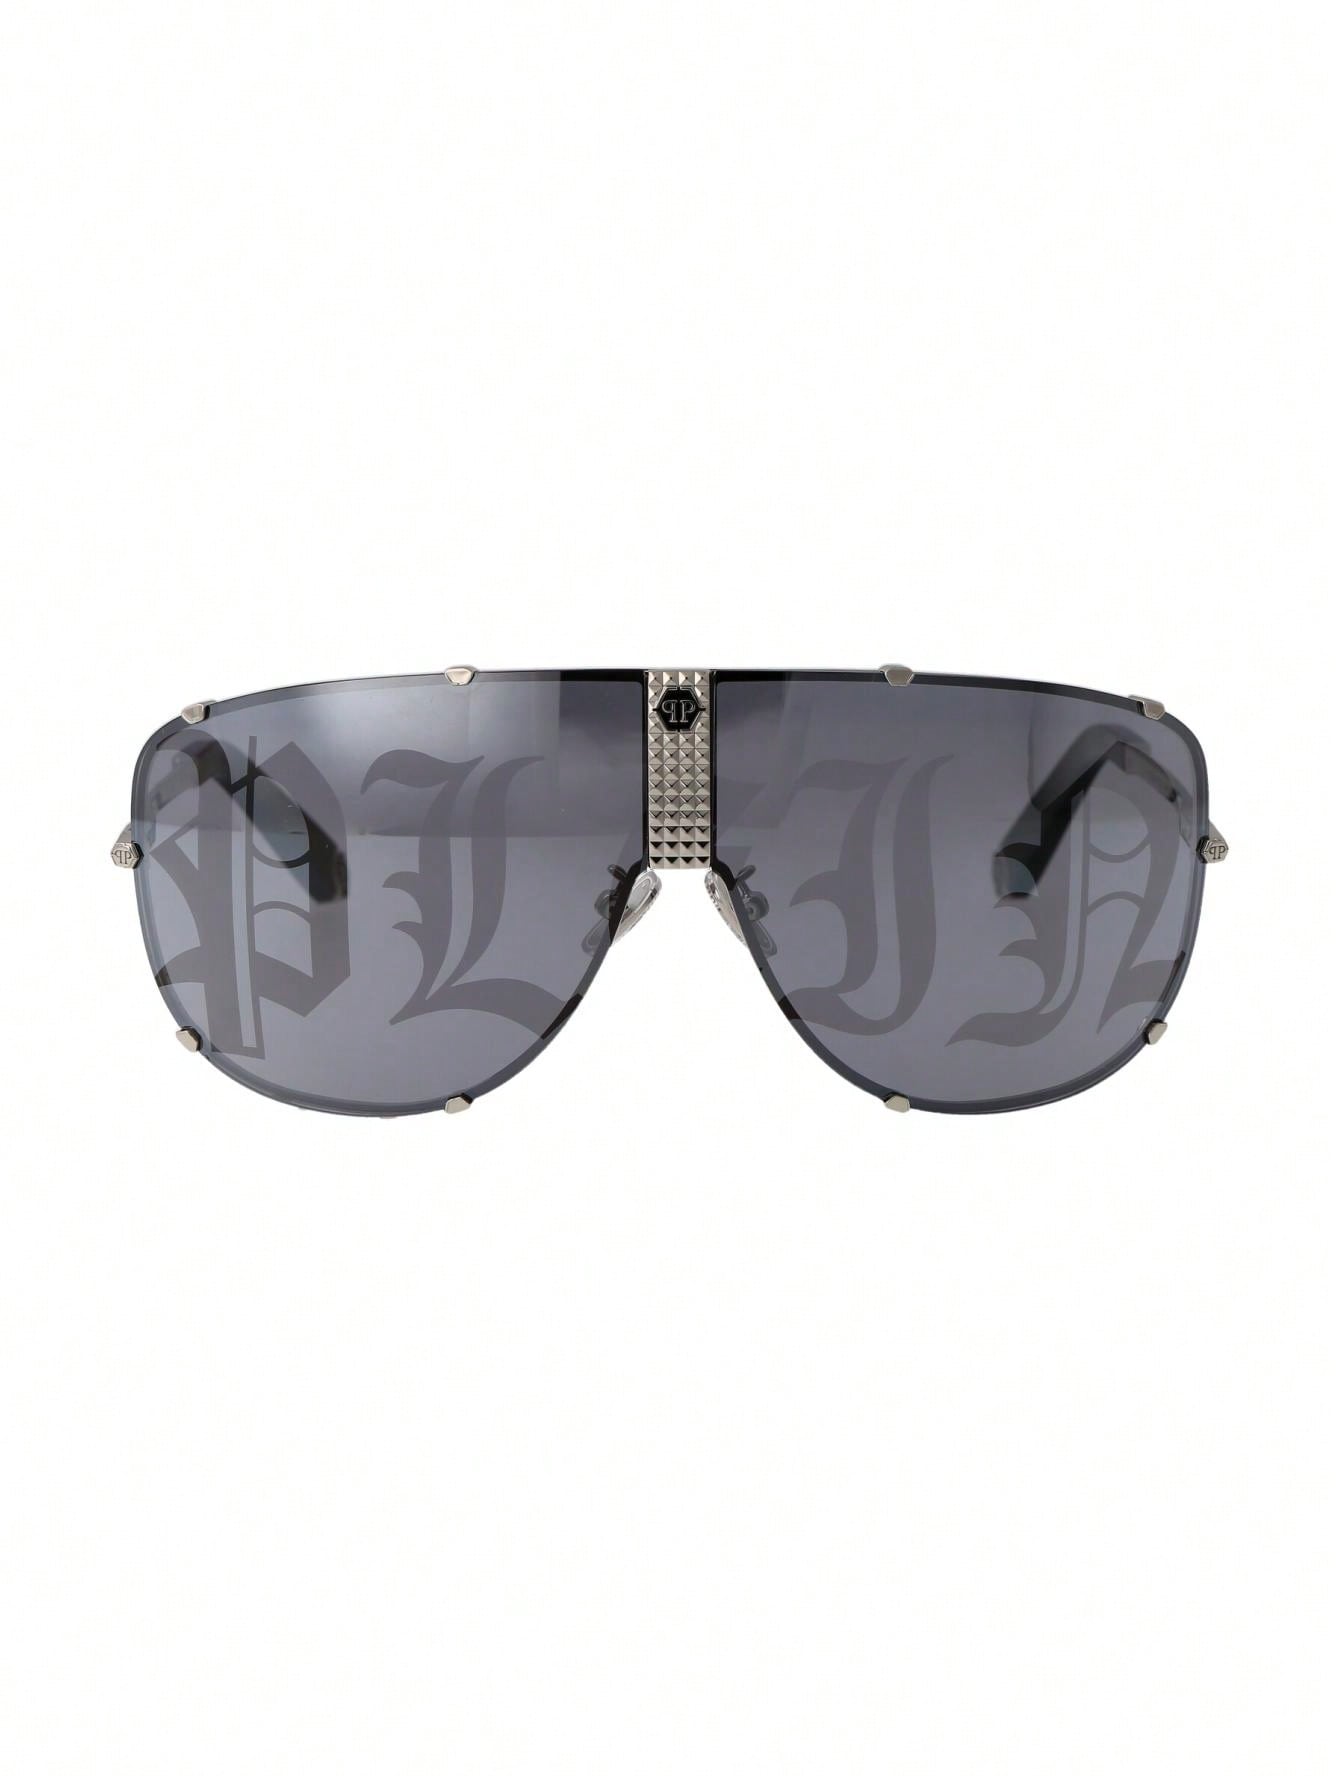 Мужские солнцезащитные очки Philipp Plein DECOR SPP075M579L, многоцветный